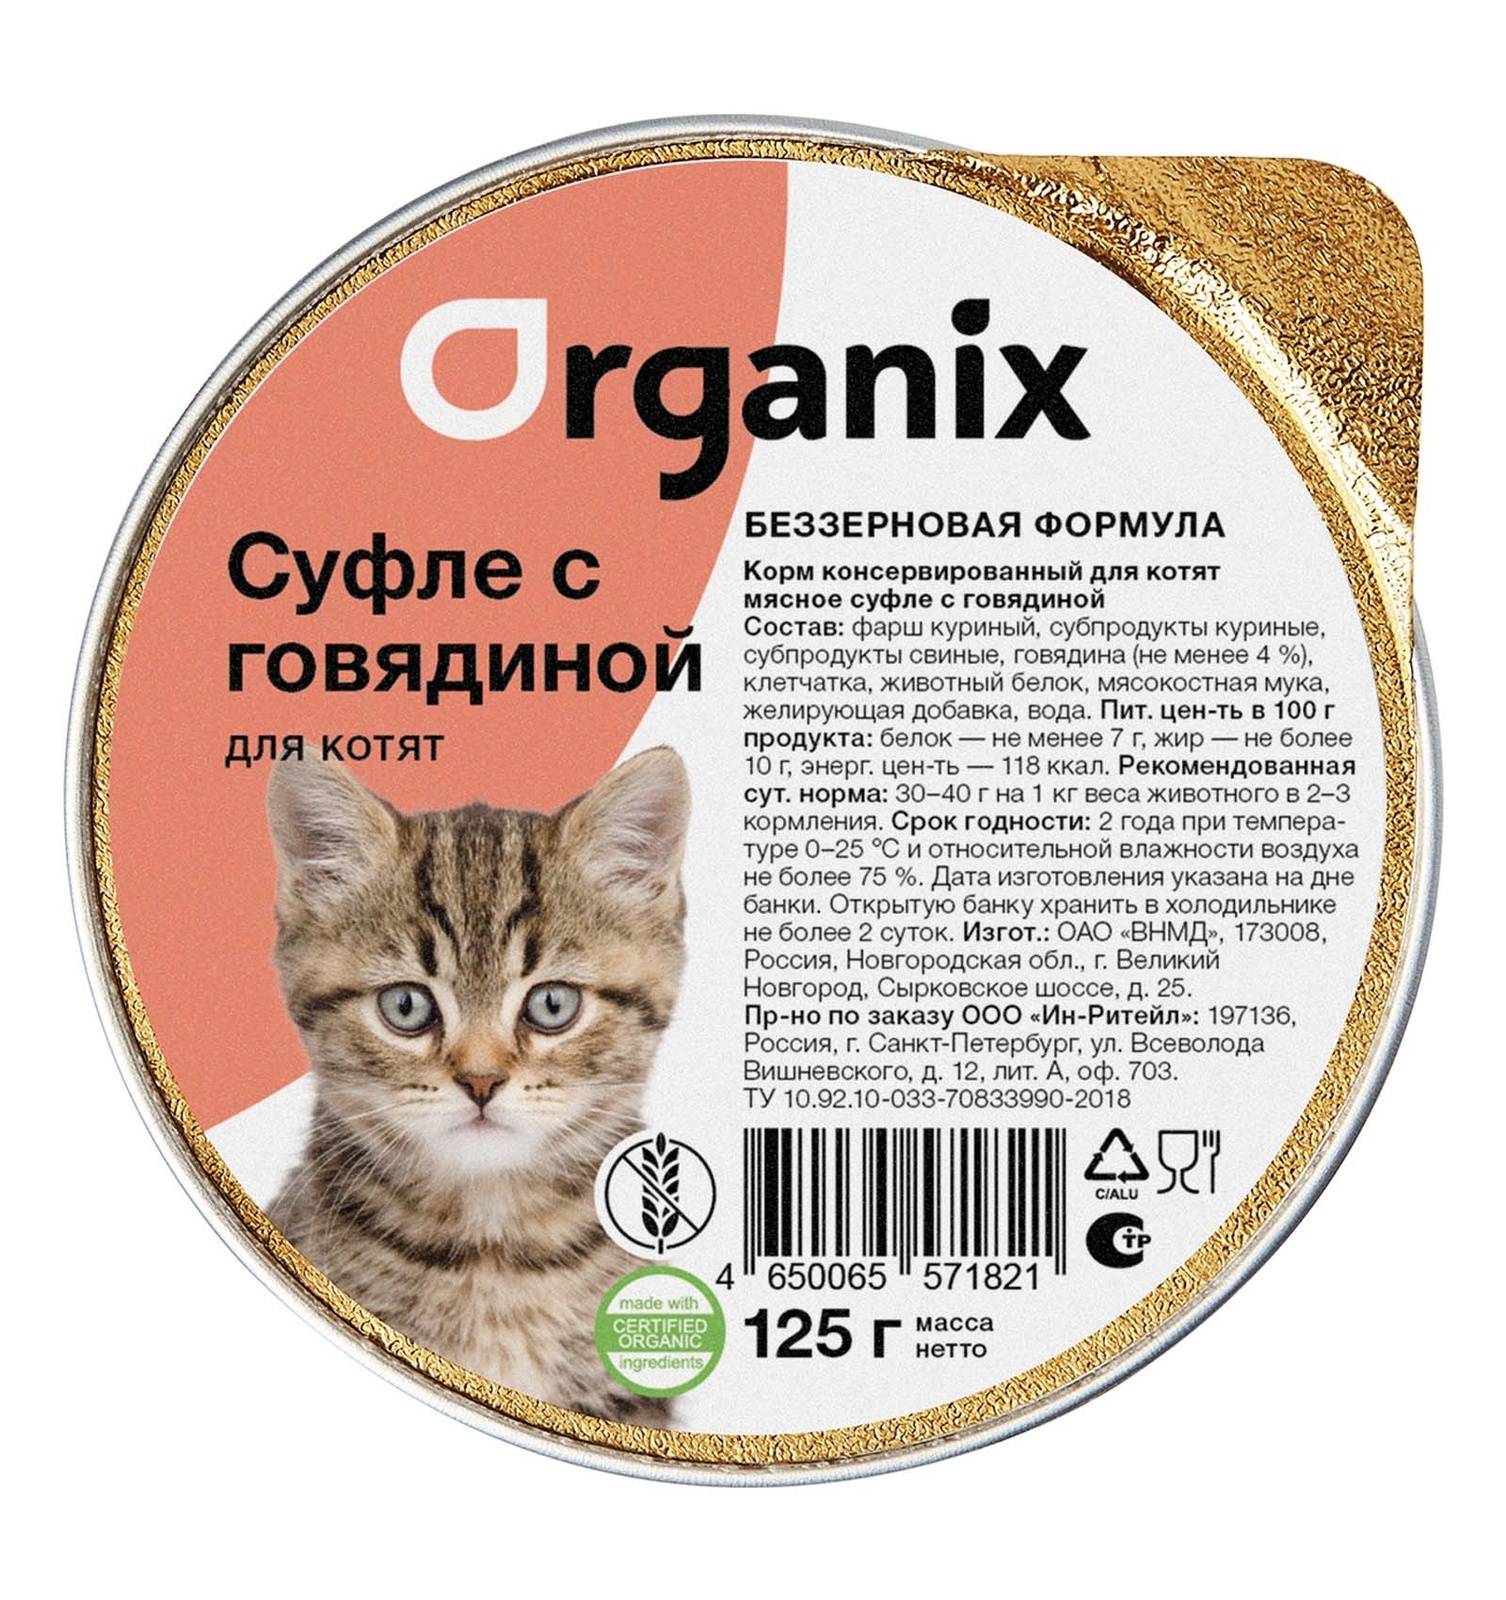 Organix мясное суфле с говядиной для котят (125 г)